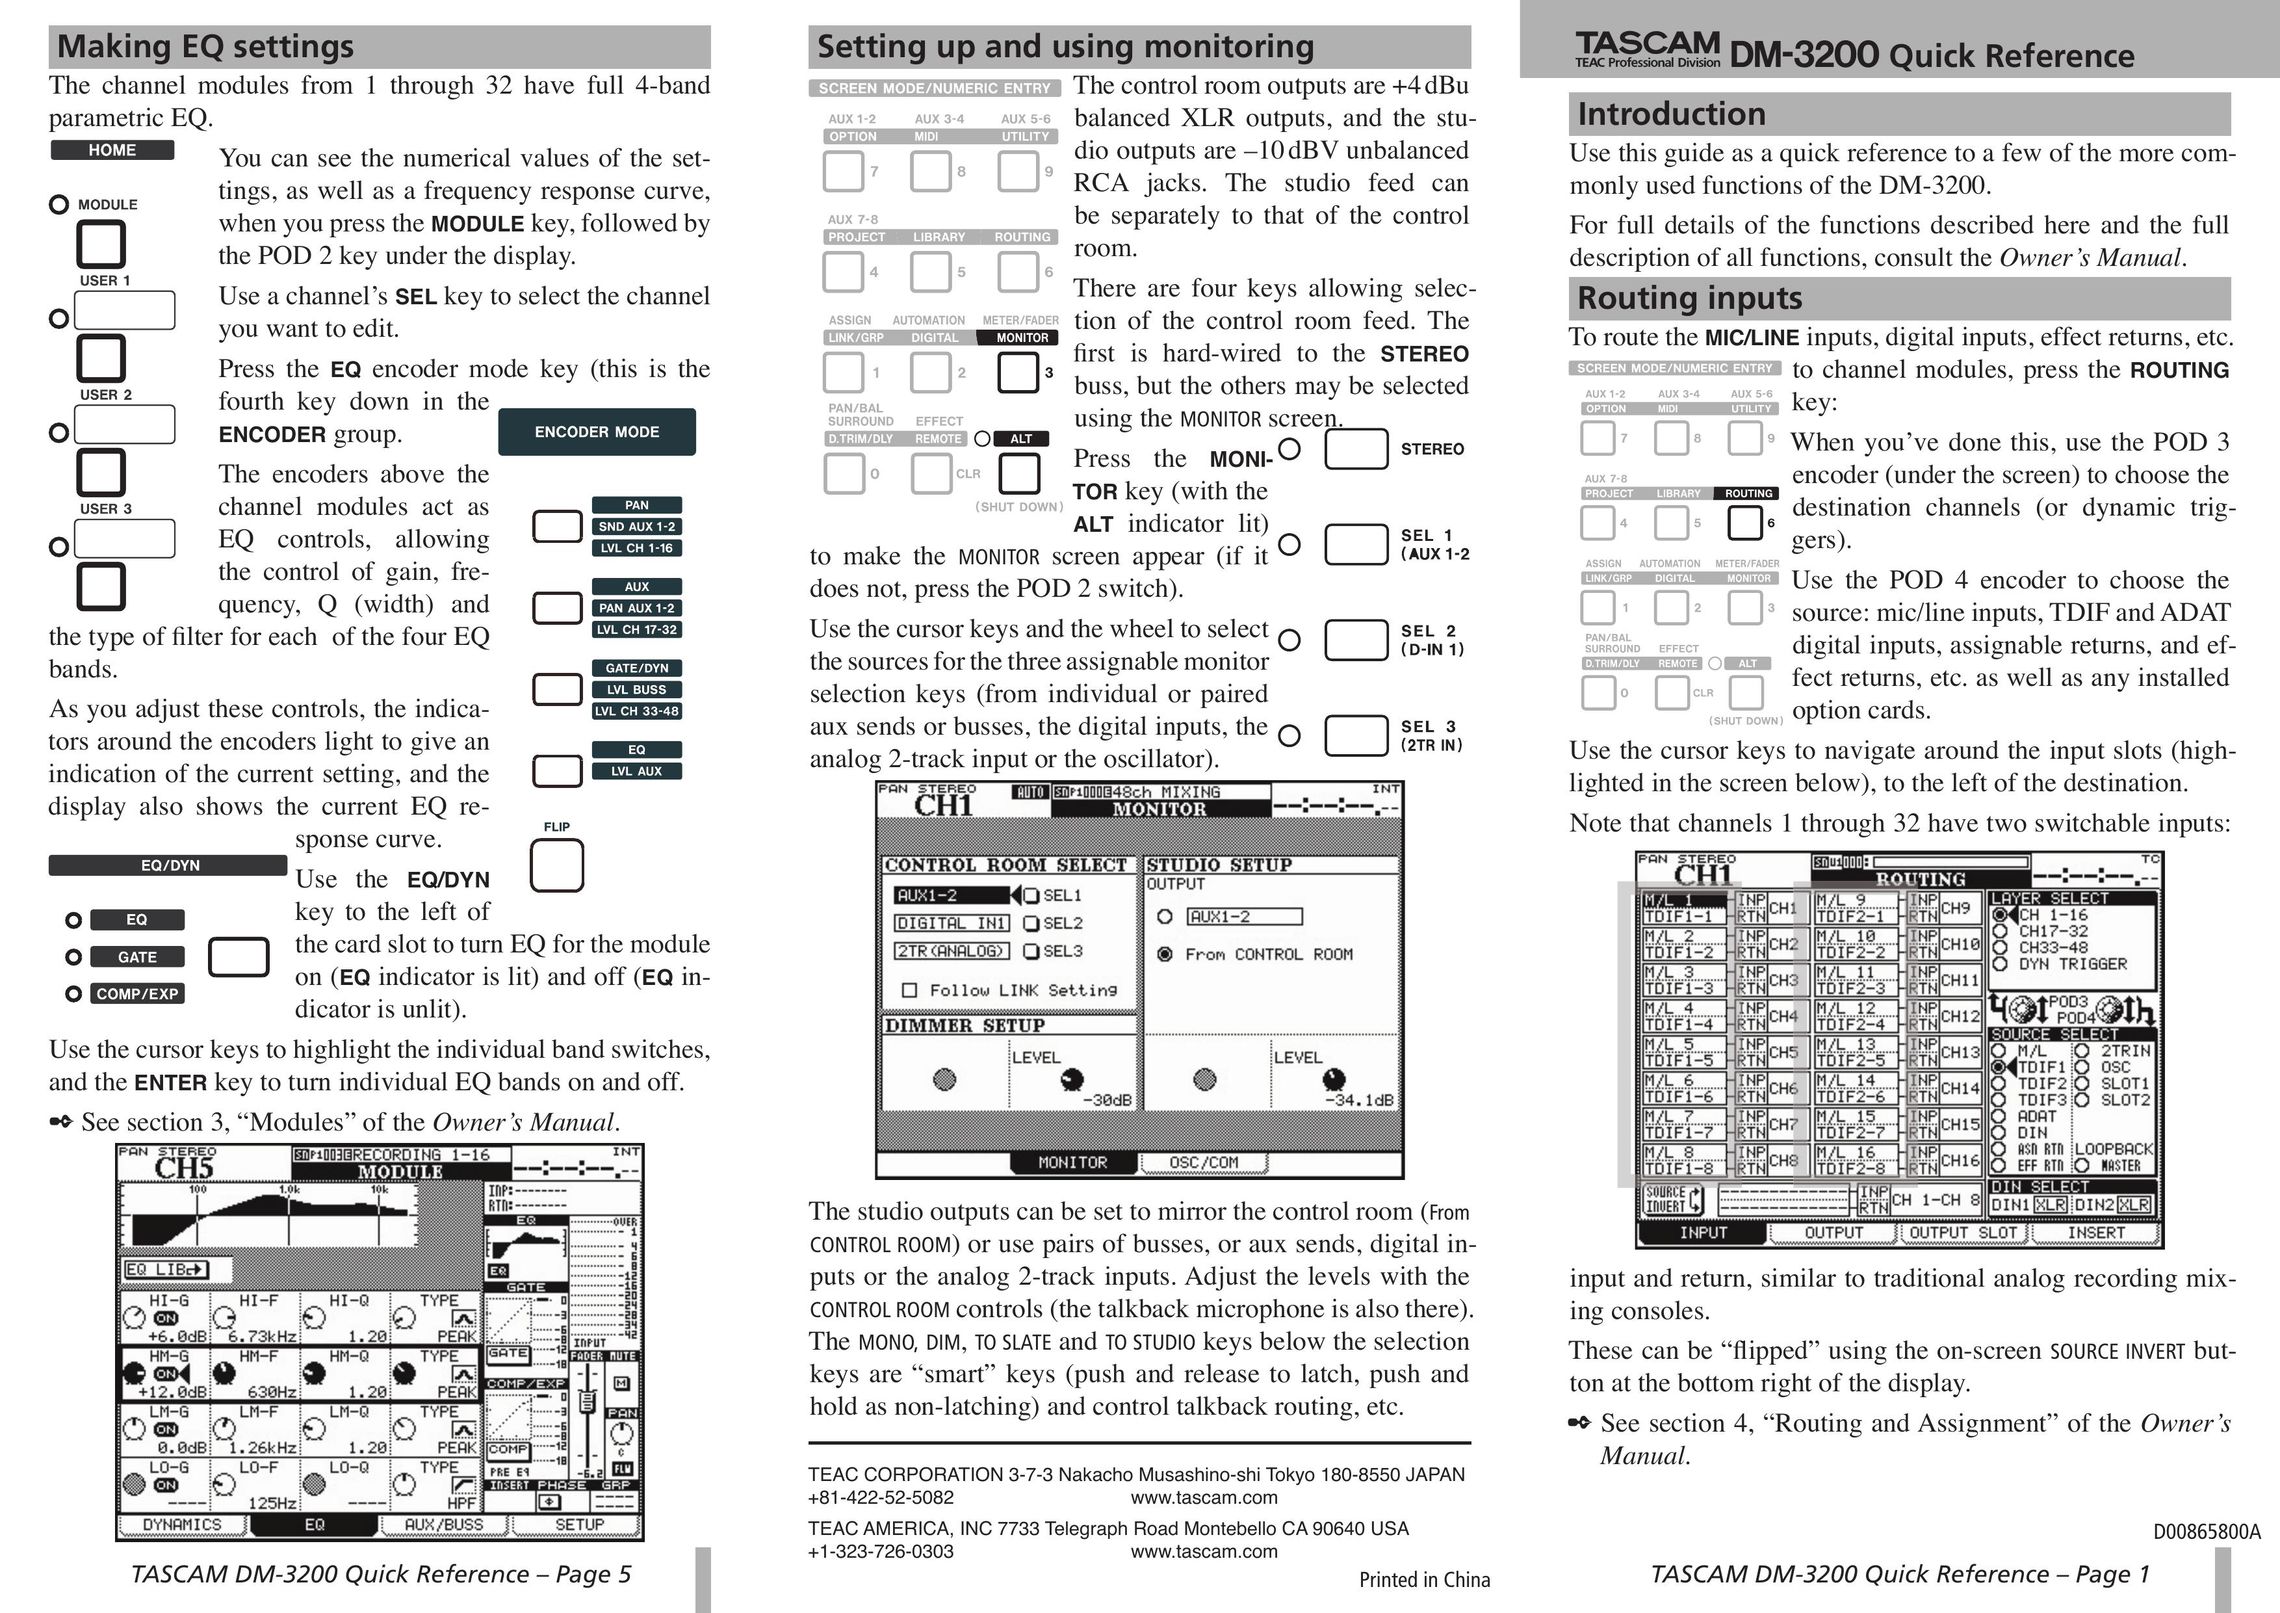 Tascam DM-3200 Double Oven User Manual